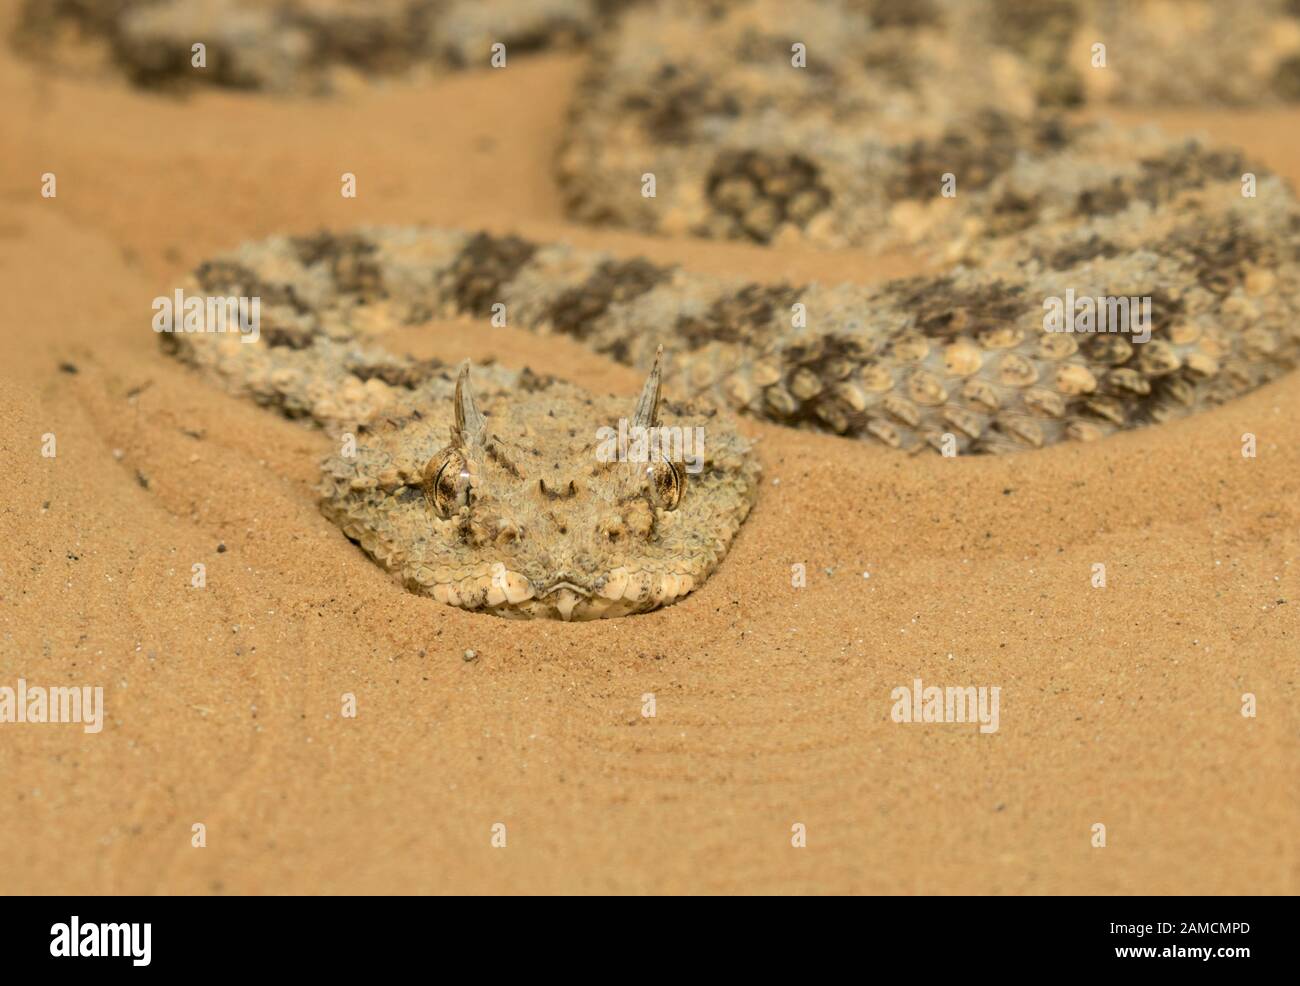 Cerastes cerastes, the horned desert viper, Negev desert, Israel Stock Photo